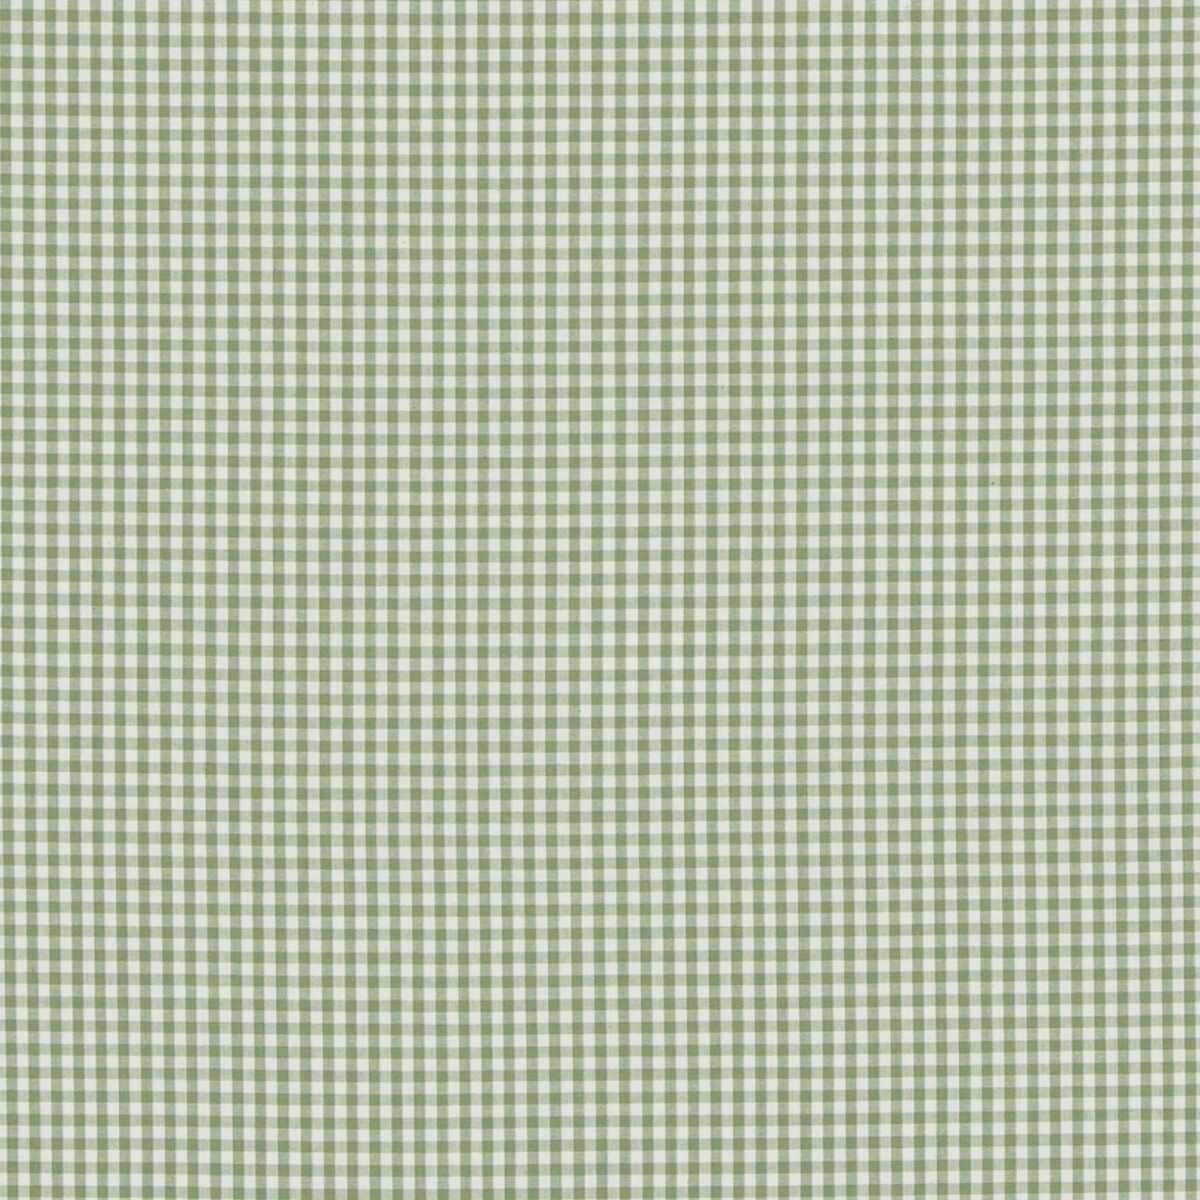 Baker Lifestyle Pf50506.735.0 Sherborne Gingham Multipurpose Fabric in Green